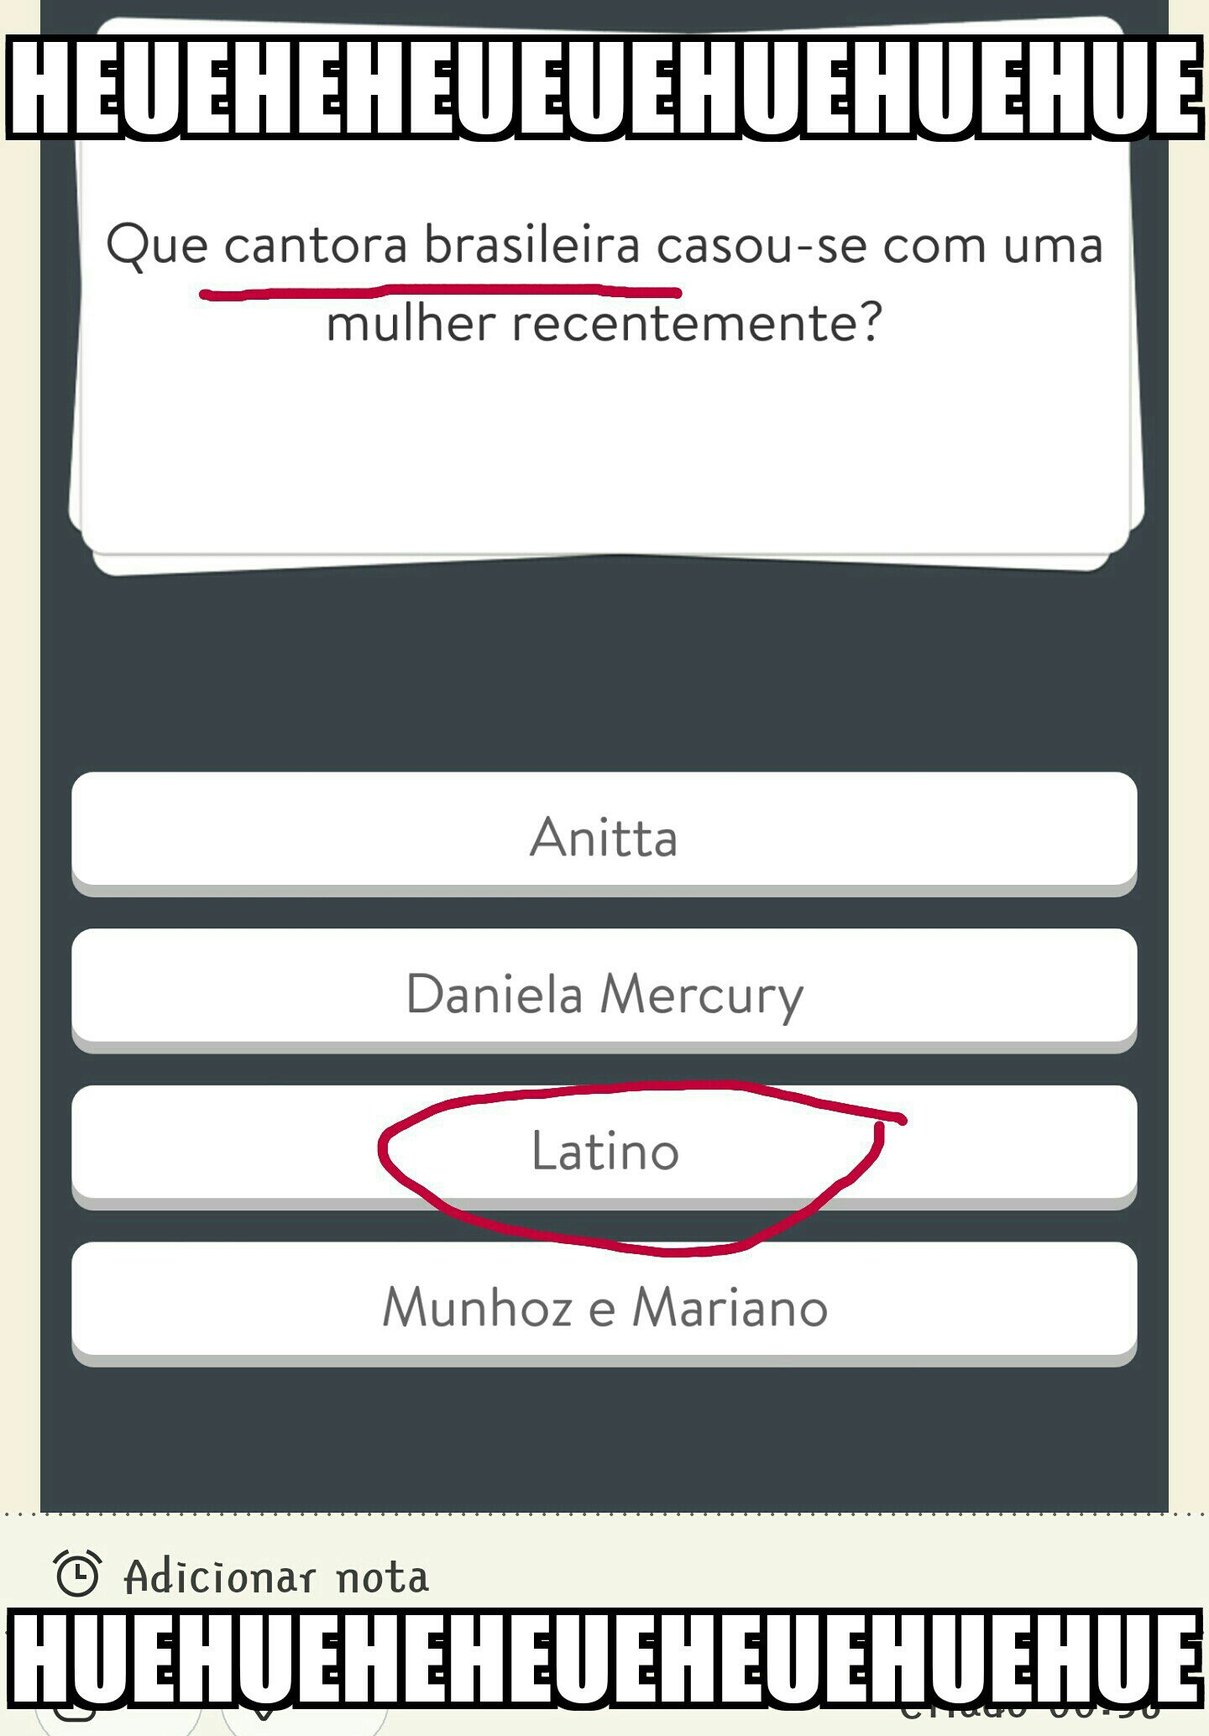 LatinA - meme